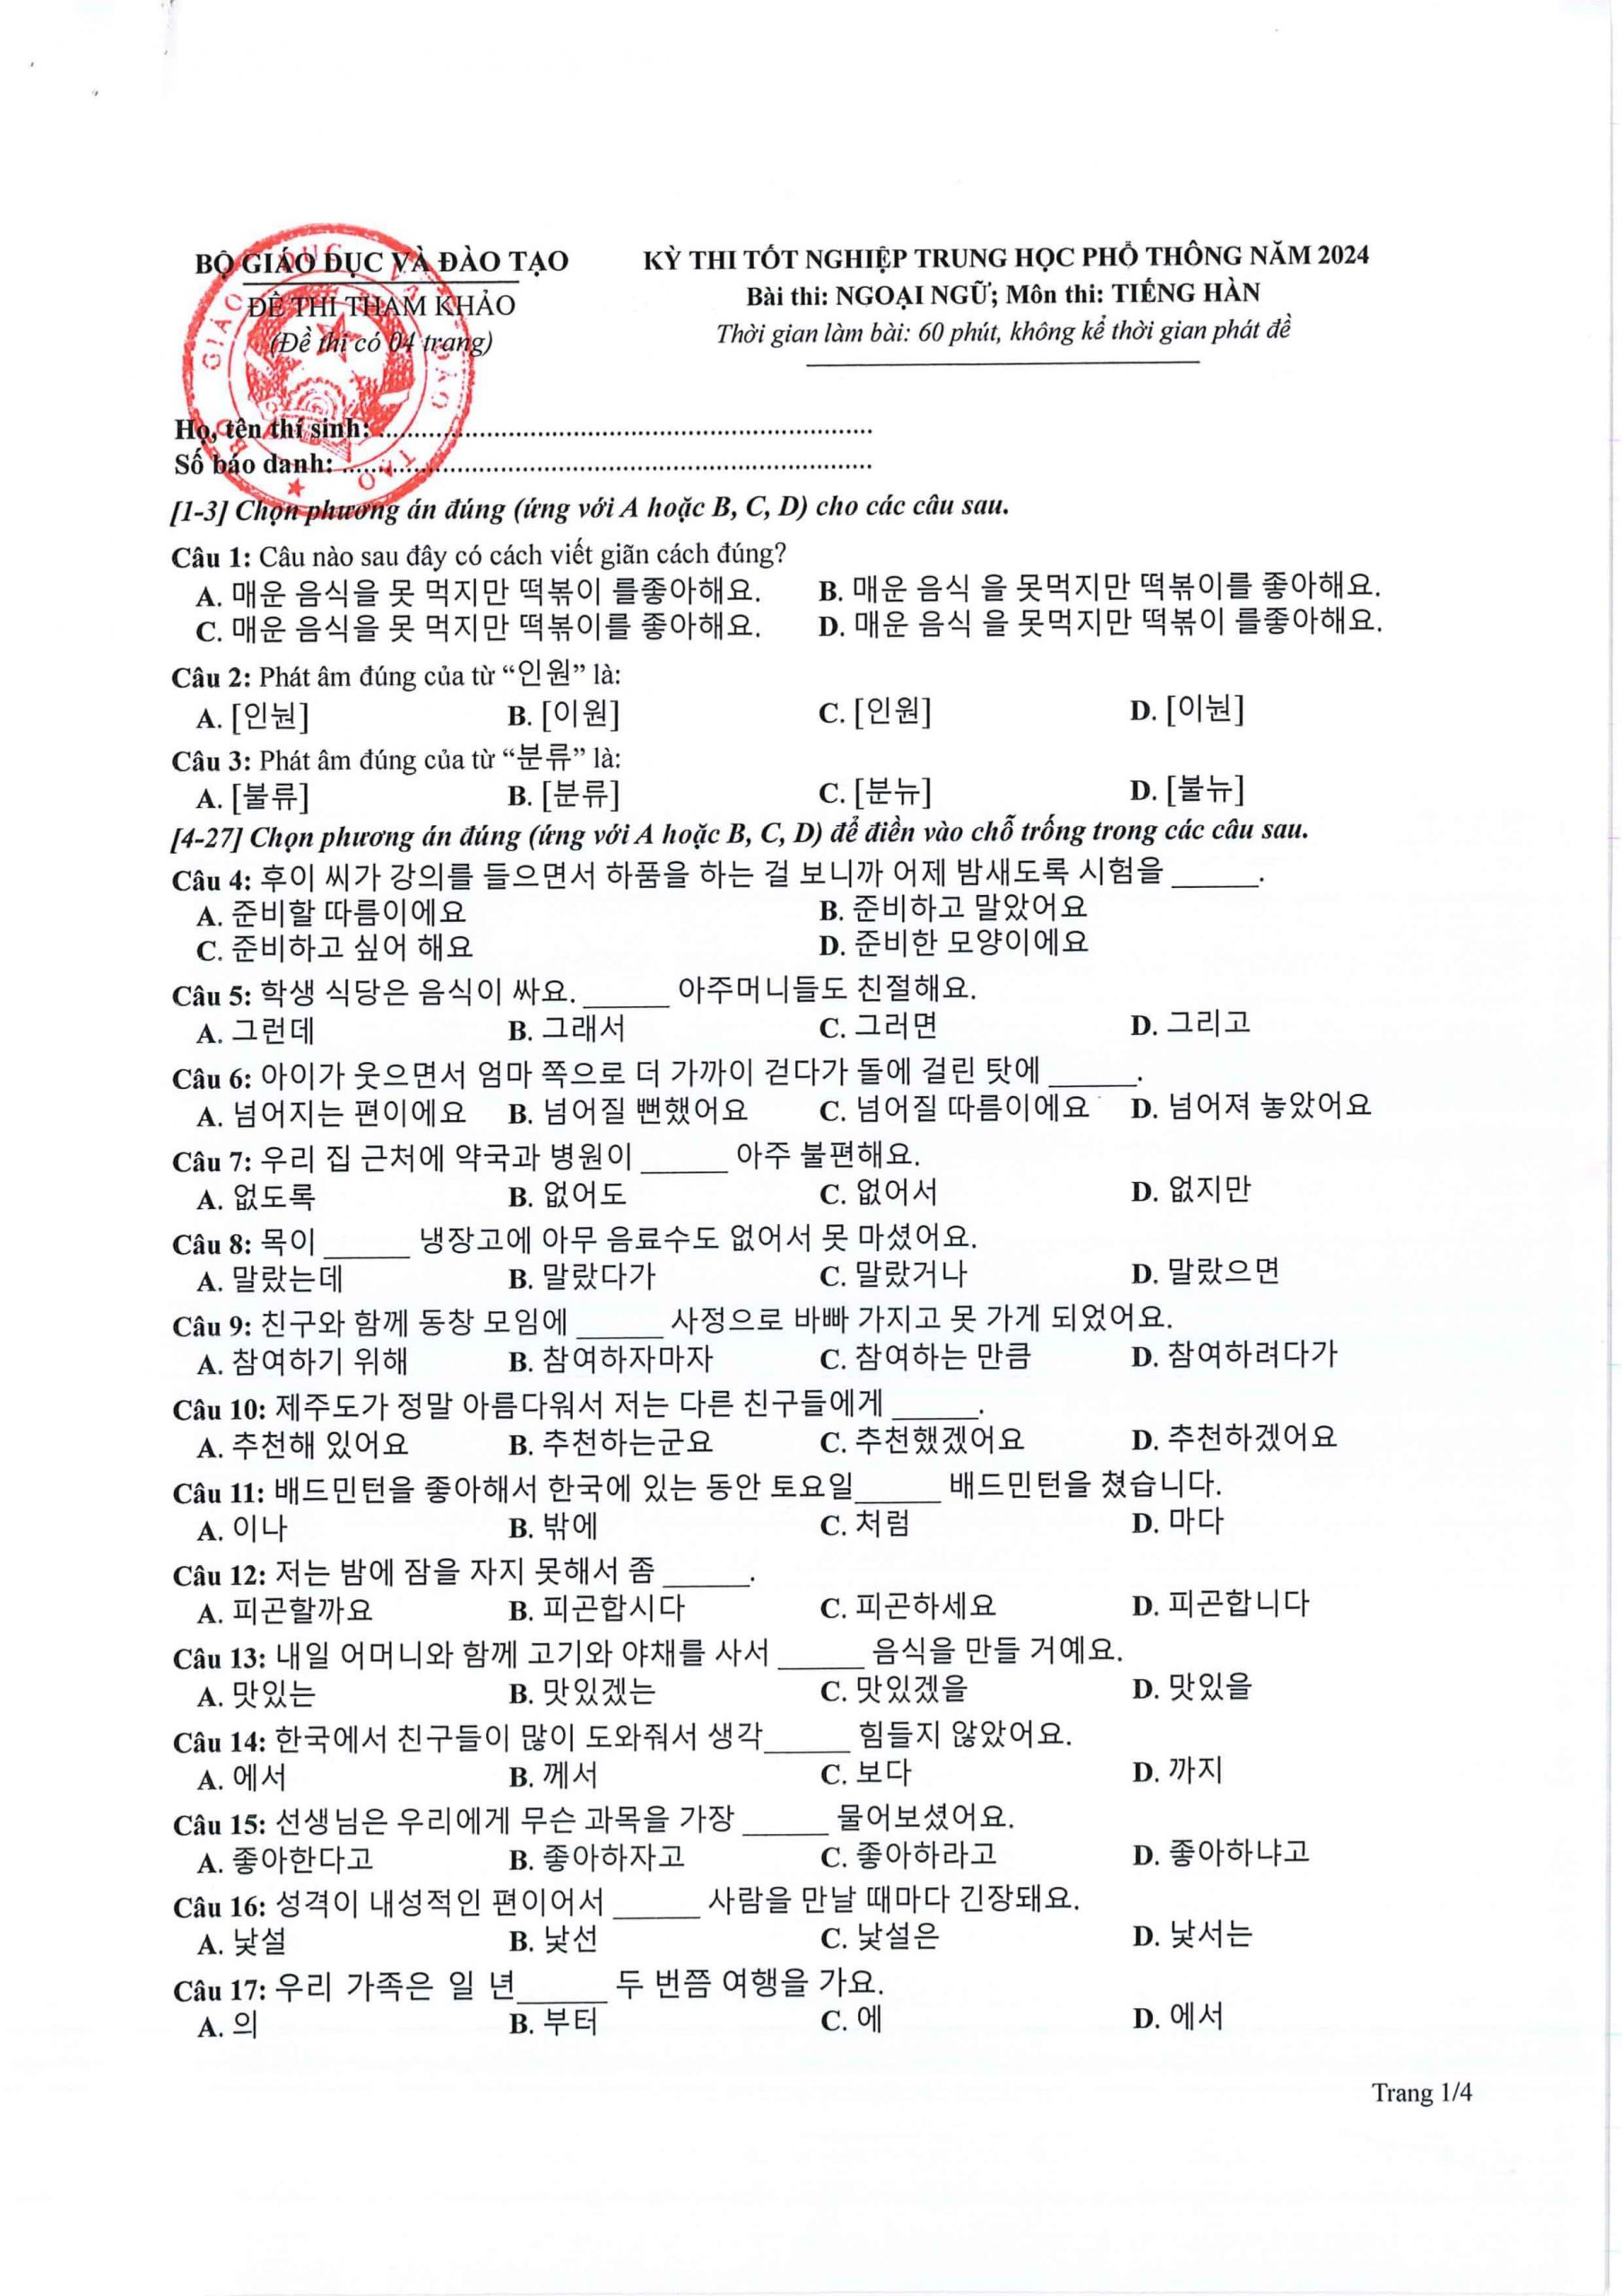 Đề tham khảo môn Tiếng Hàn – Kỳ thi tốt nghiệp THPT 2024 - 1